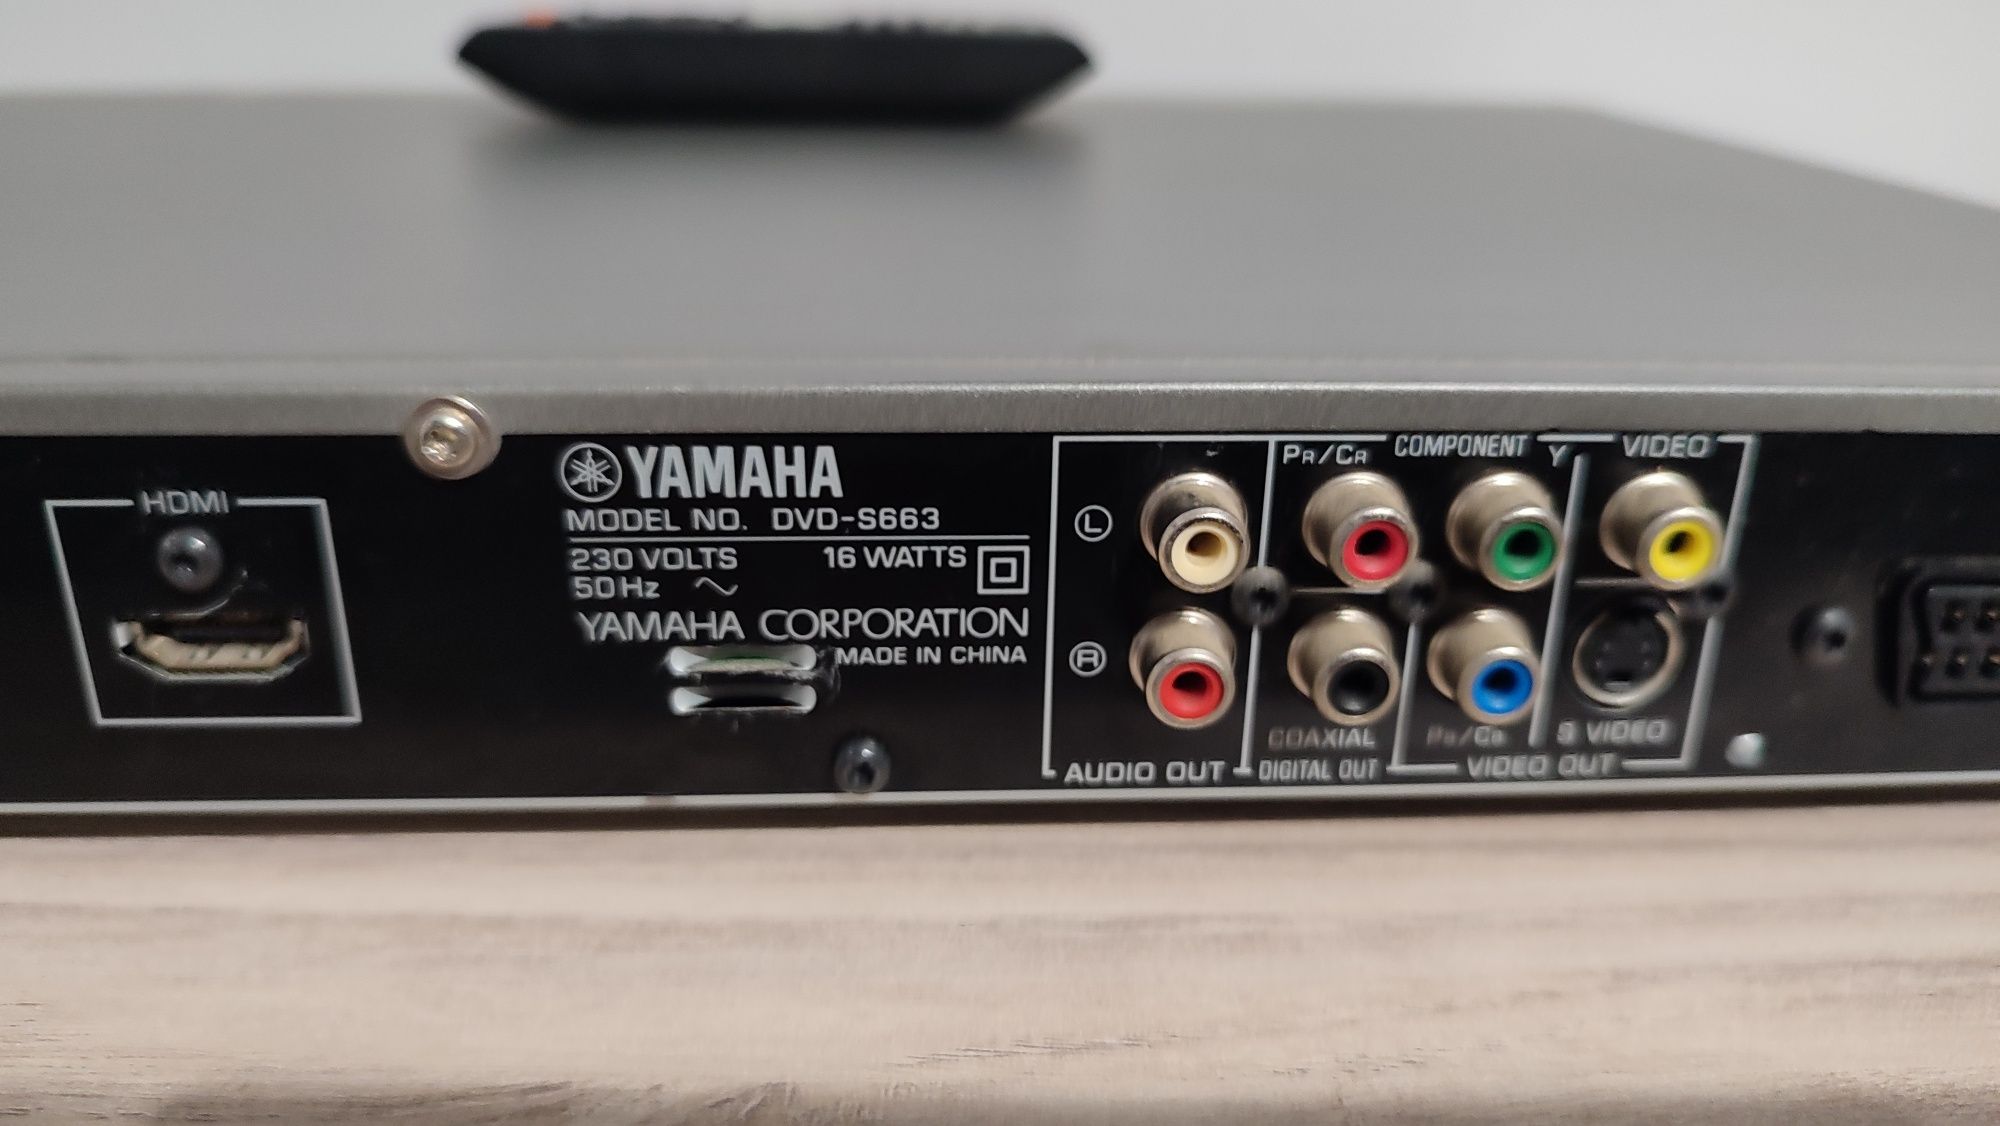 Odtwarzacz DVD Yamaha s663